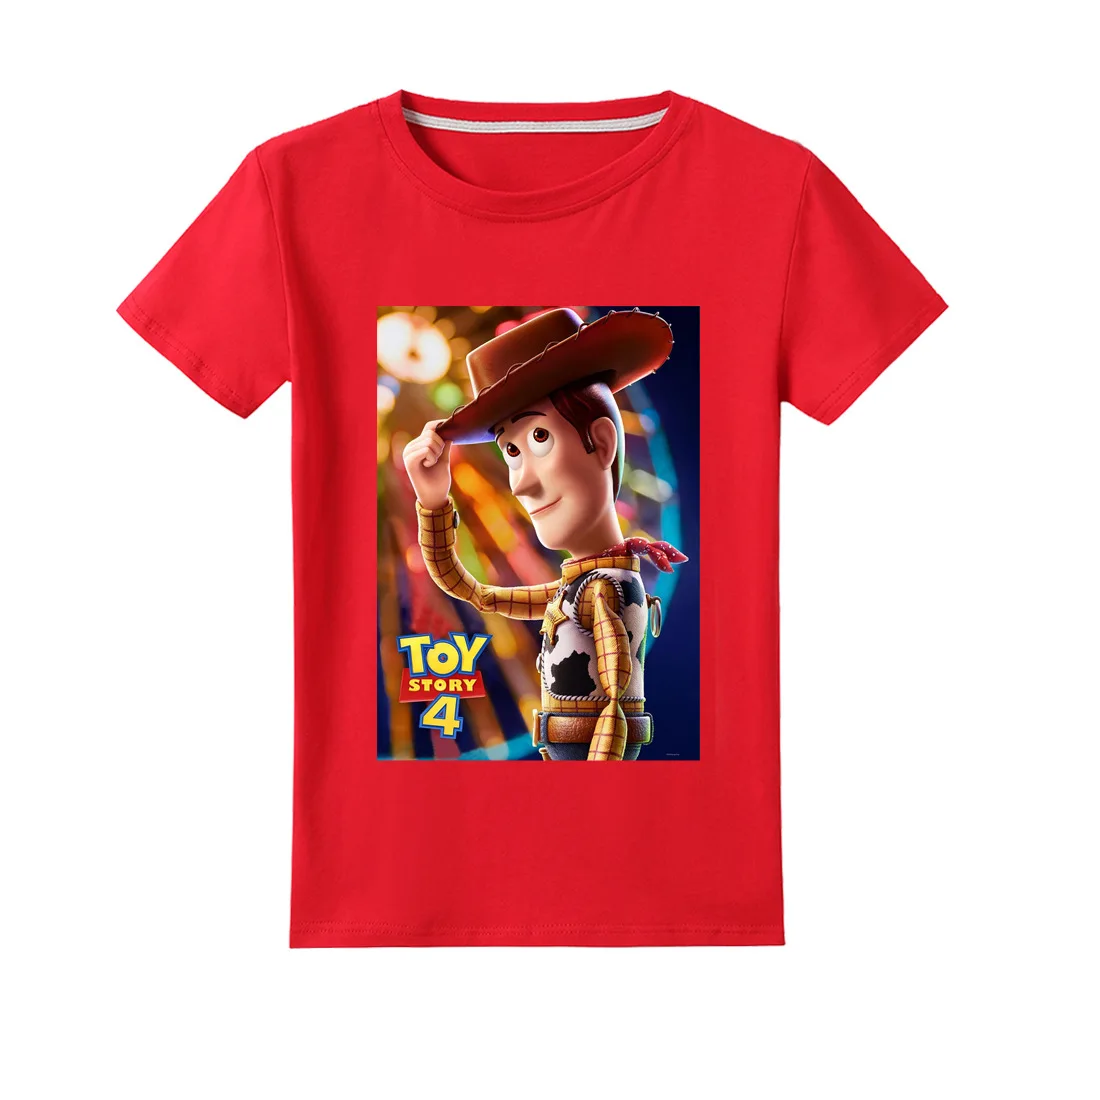 Новая детская футболка из 100% хлопка с героями мультфильма «История игрушек» Детская футболка из хлопка летняя одежда Базз Лайтер/Вуди